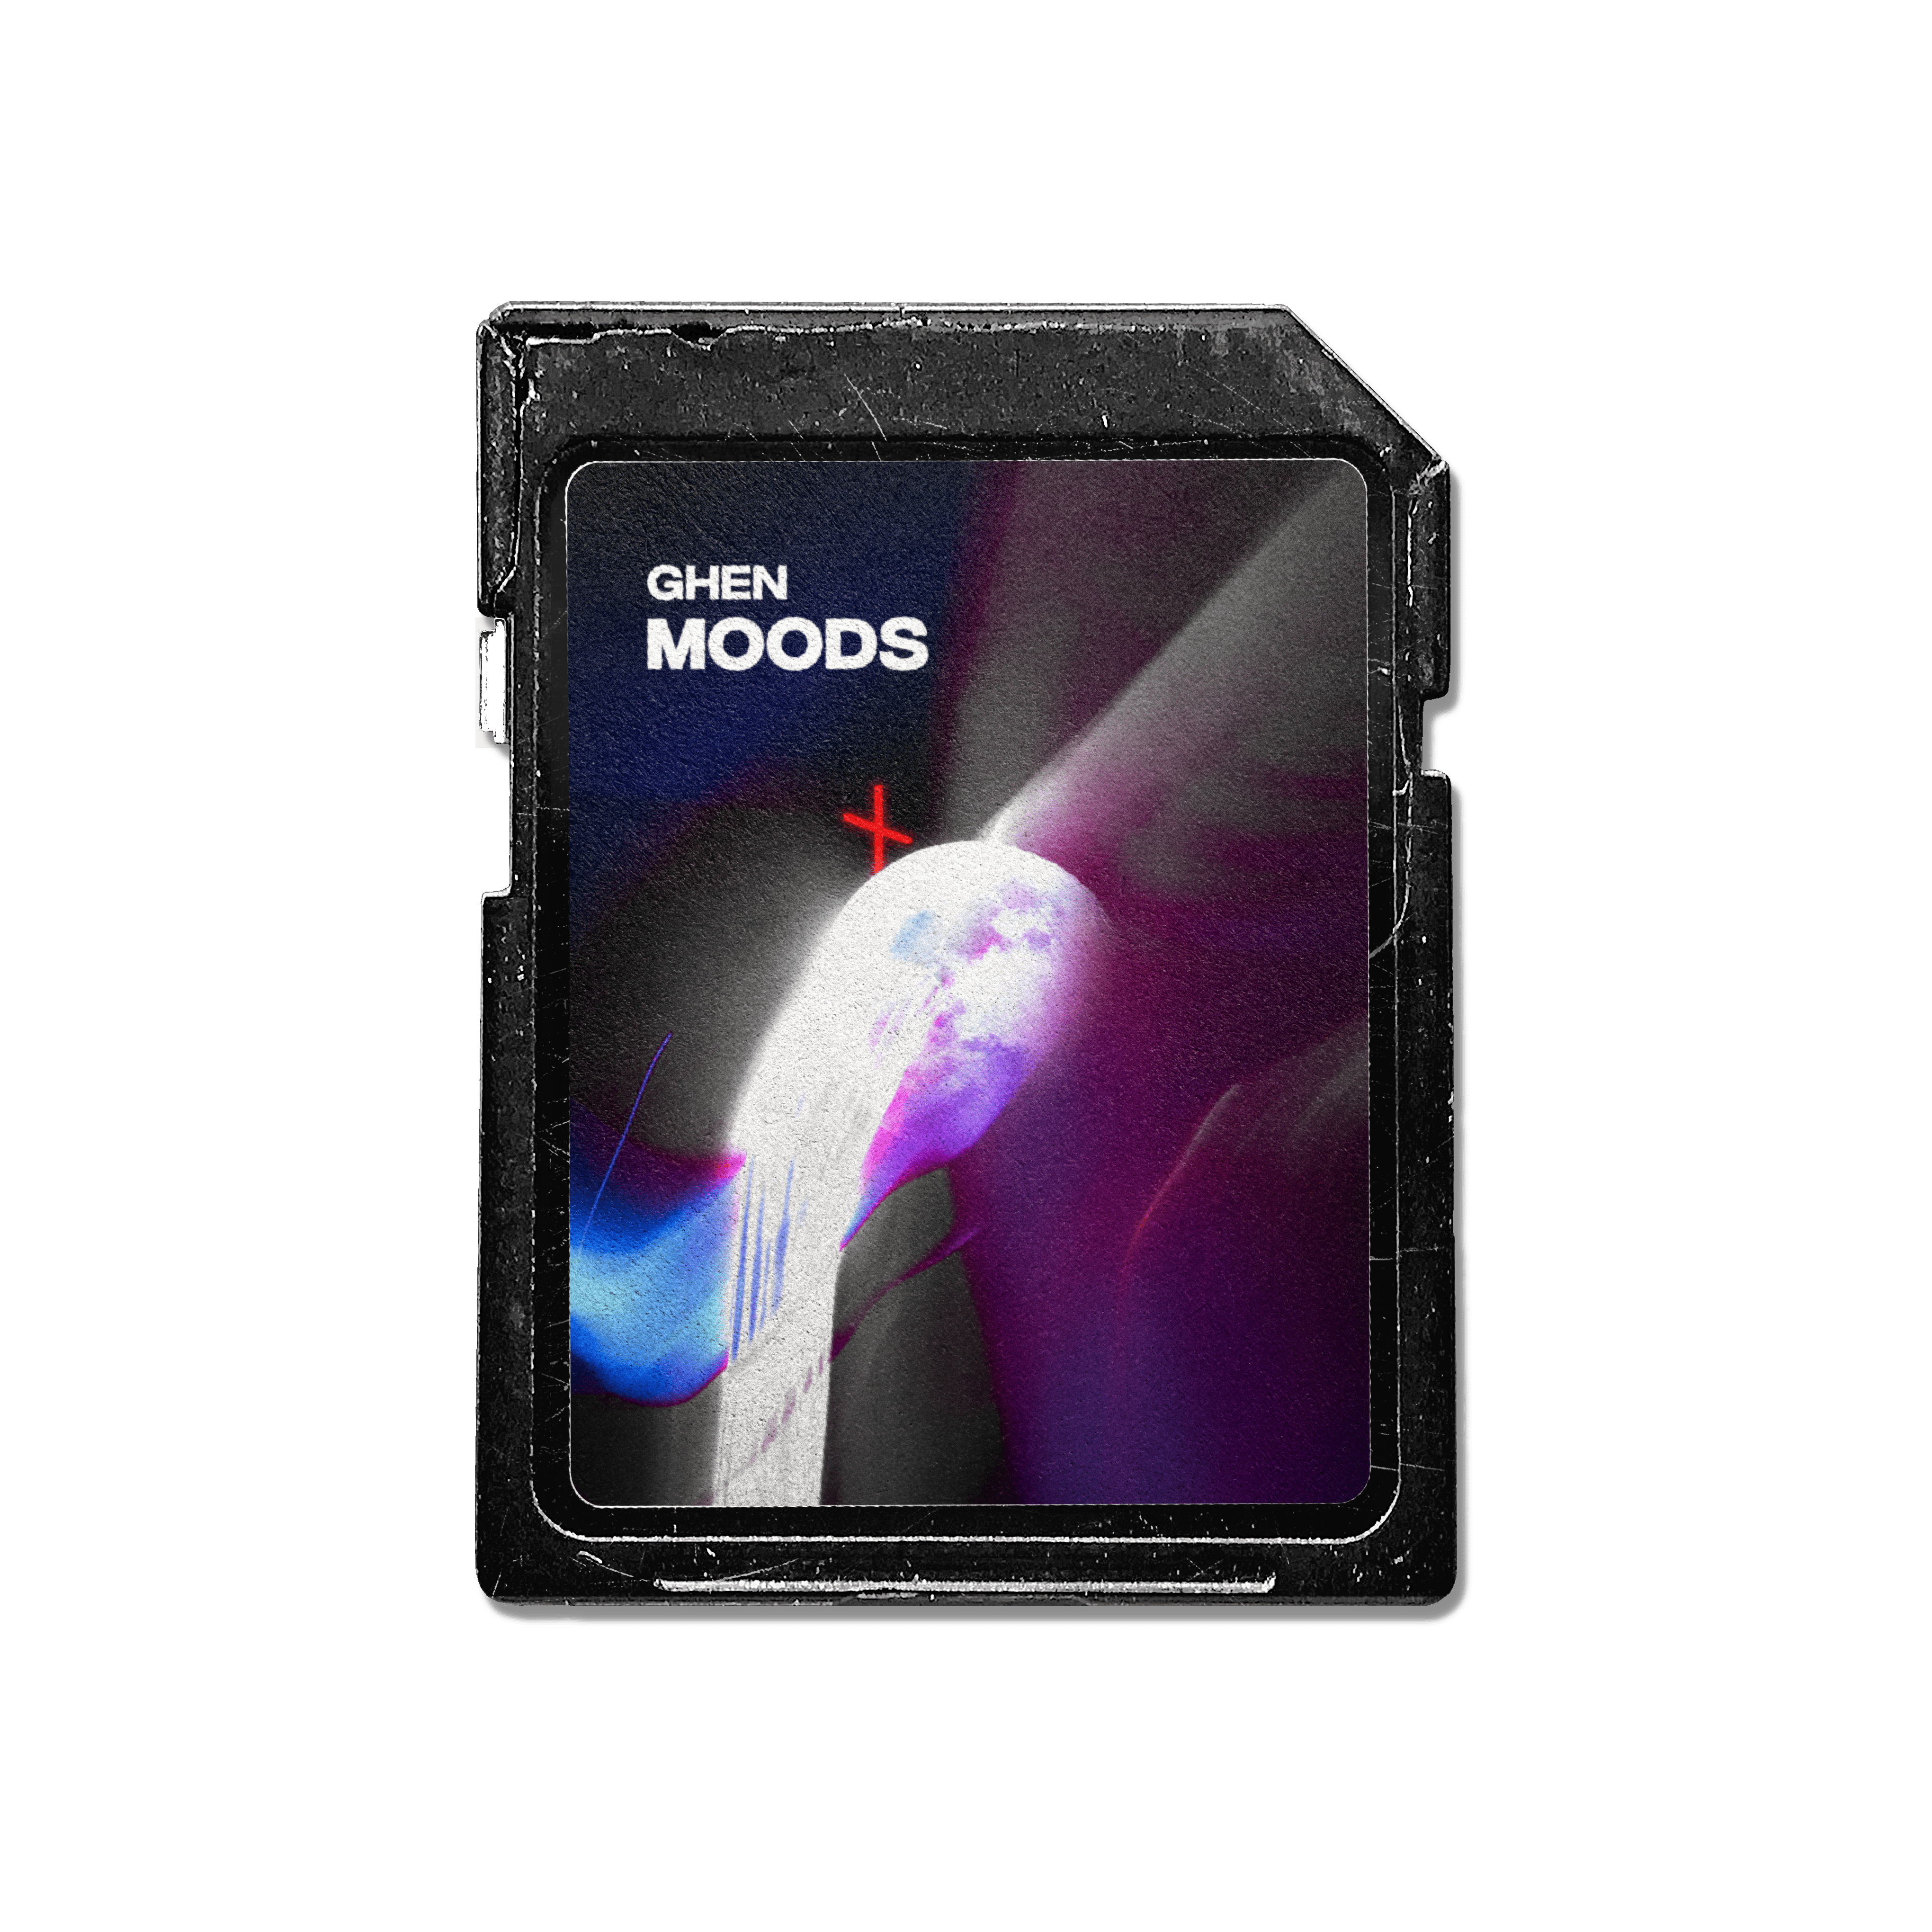 Moods - ghendead Drum Kit 